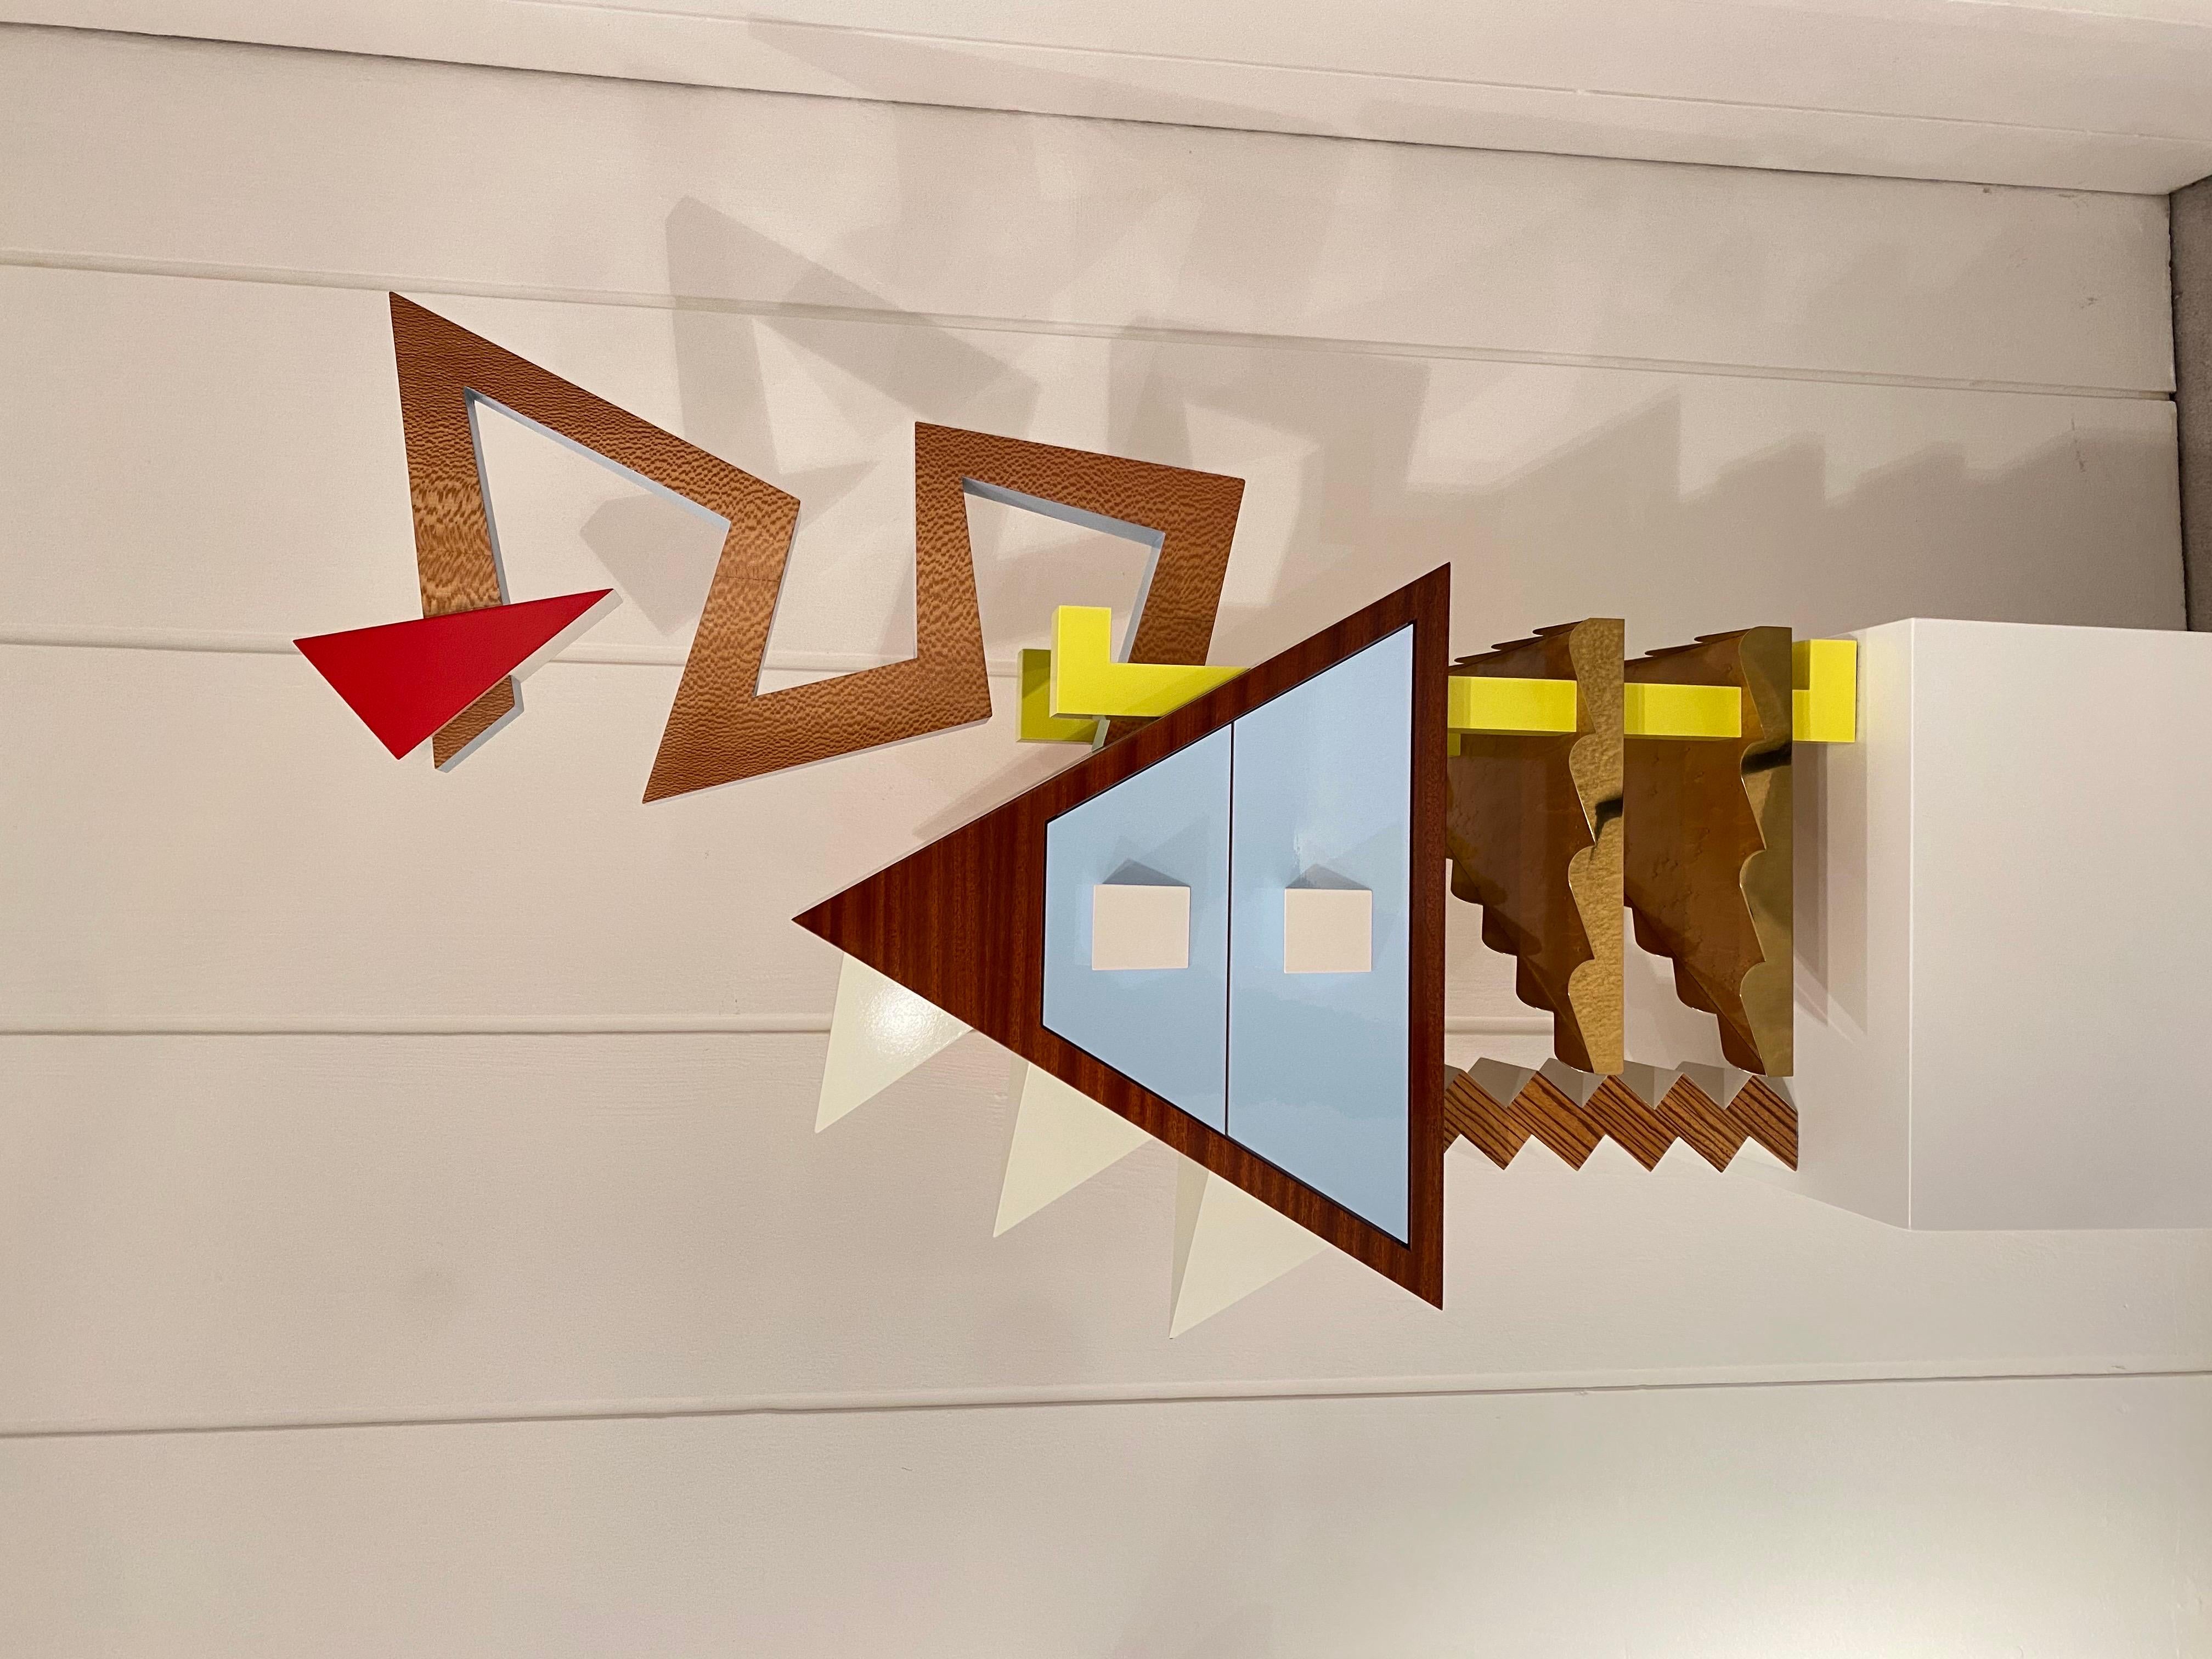 Einzigartiger Schrank des Künstlers Frederik Smits, Django 2020
Handgefertigtes Einzelstück, von den Künstlern signiert und zertifiziert.
Inspiriert in memphis mouvement
Er besteht aus verschiedenen Holzarten, Messing und lackiertem Holz.
Ideal,